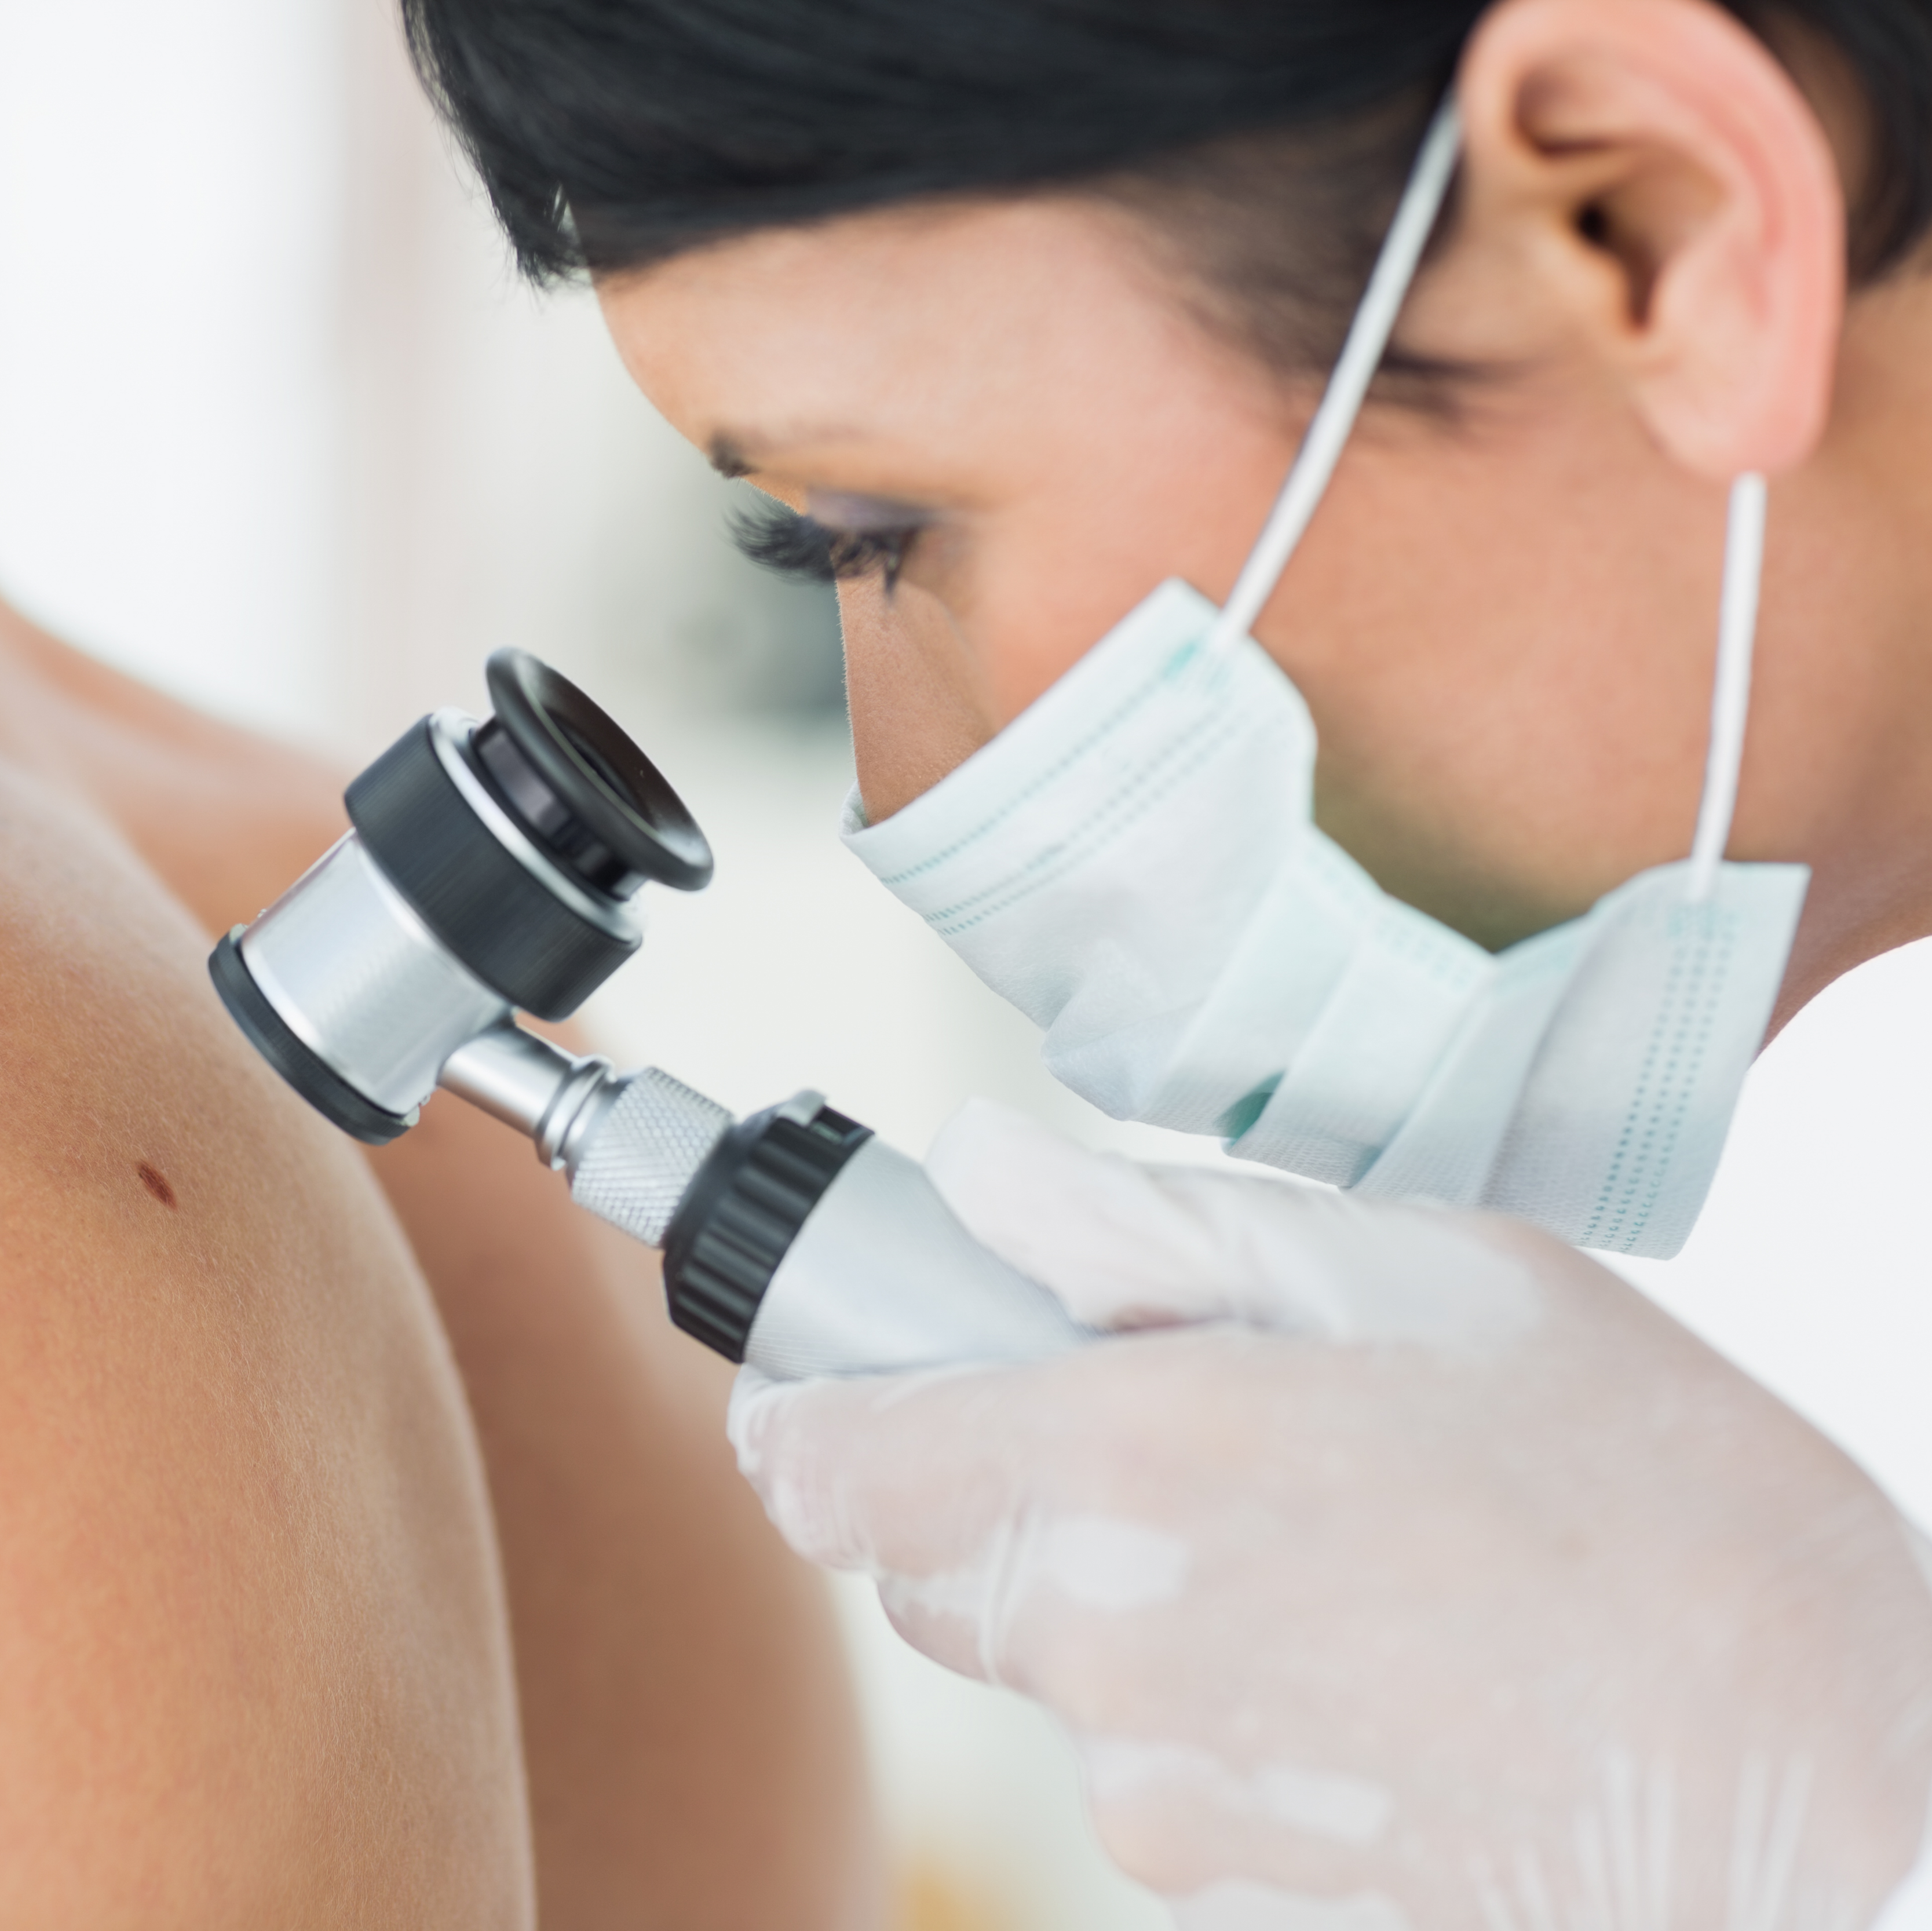 Posvećeni unapređenju dermatologije i poboljšanju kvaliteta života osoba sa osetljivom kožom